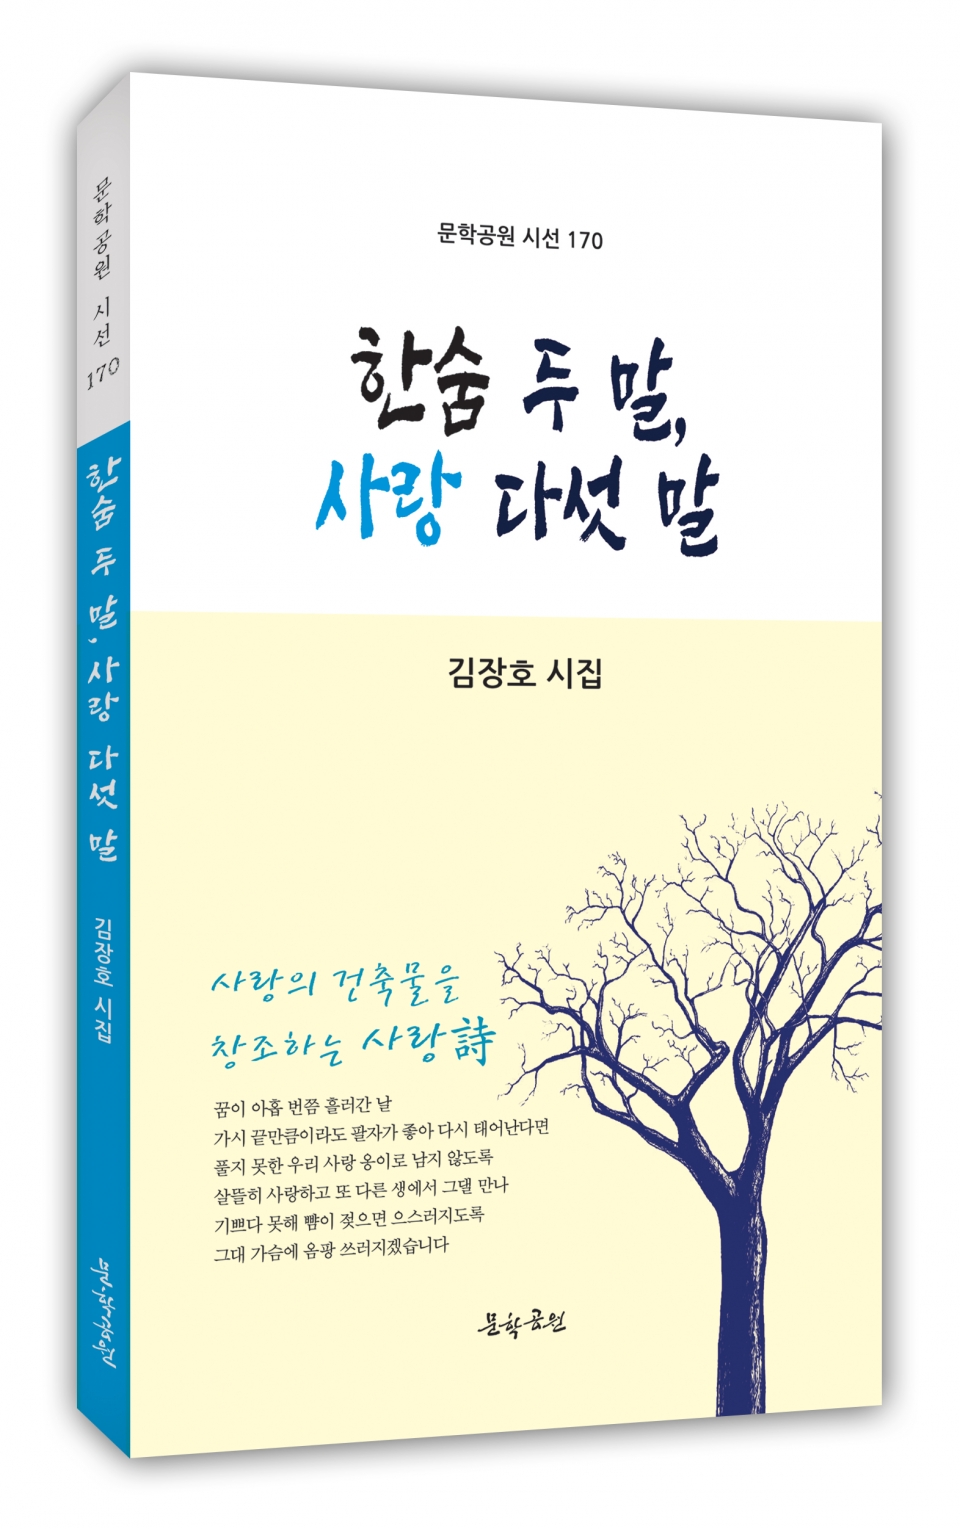 김장호 시인의 세 번째 시집 ‘한숨 두 말, 사랑 다섯 말’ 표지.